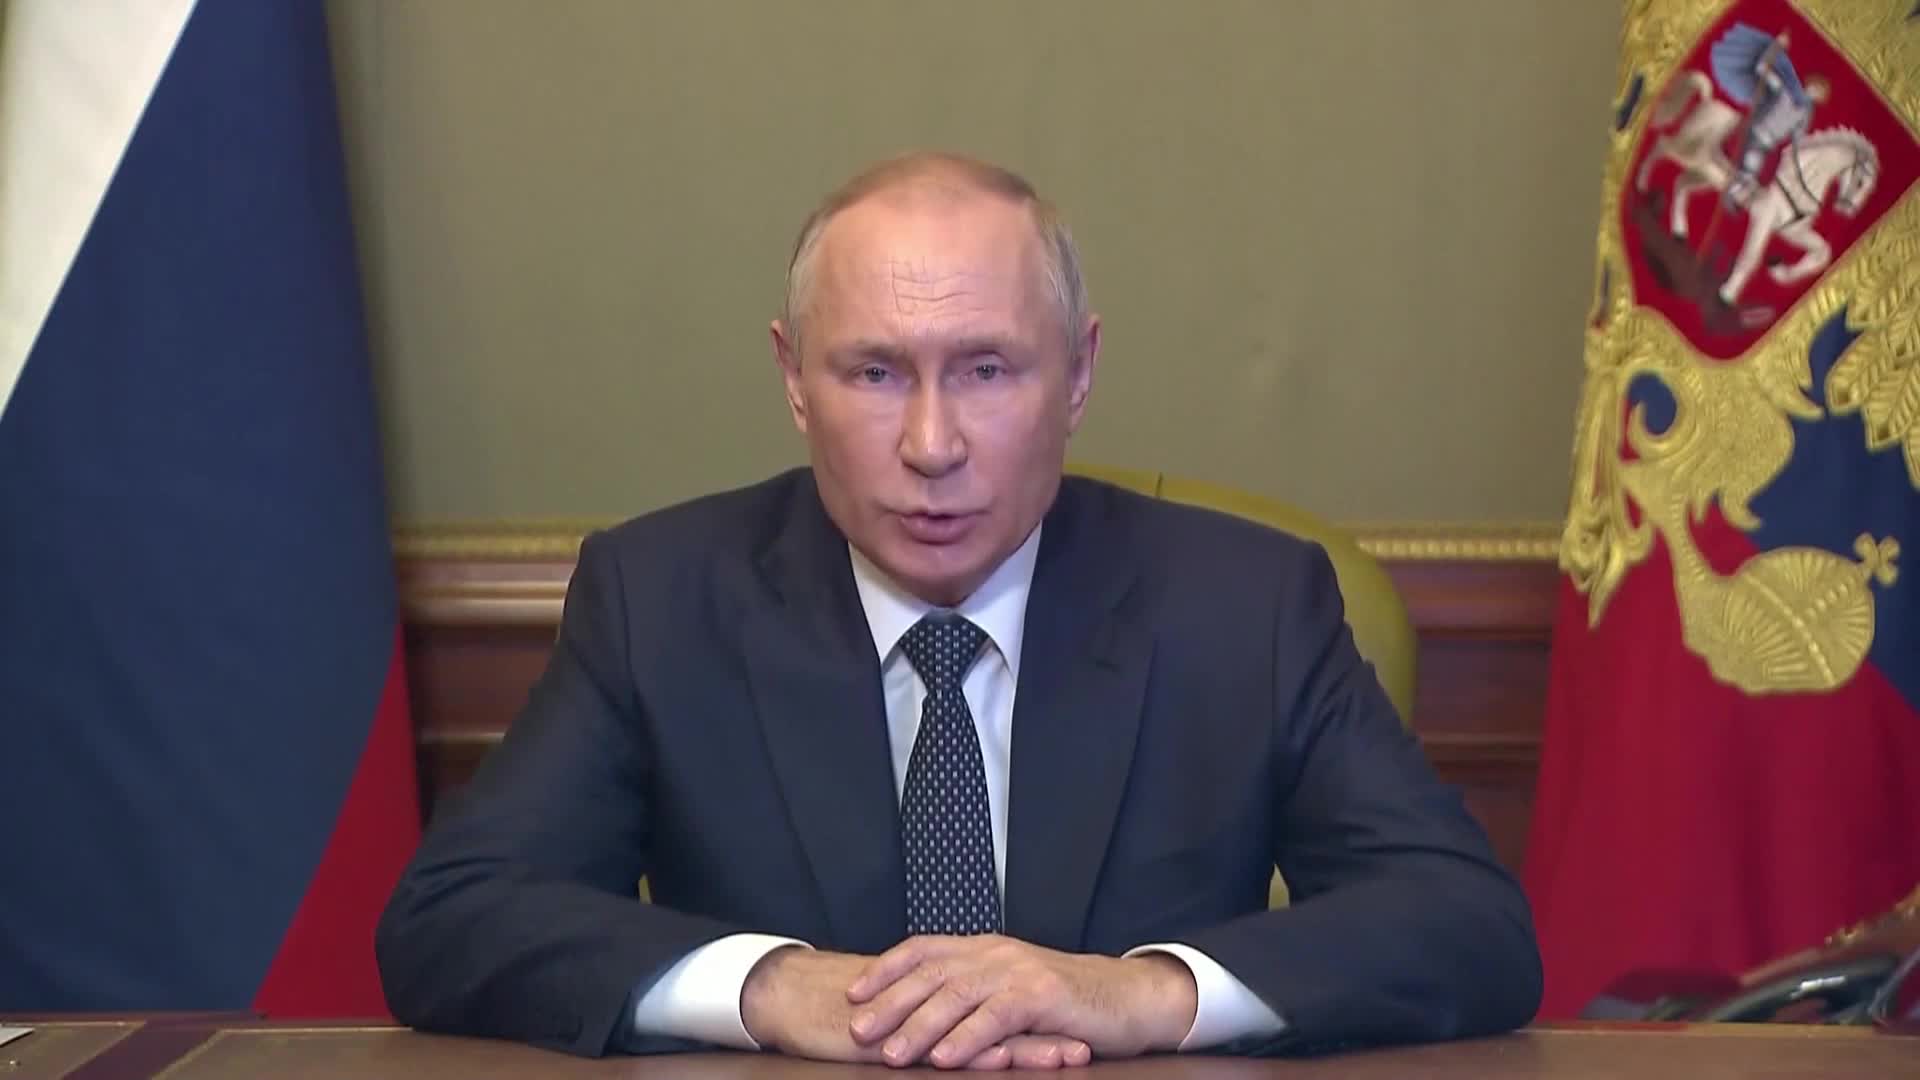 Путин: Москва ще отговори със сила на украинските атаки